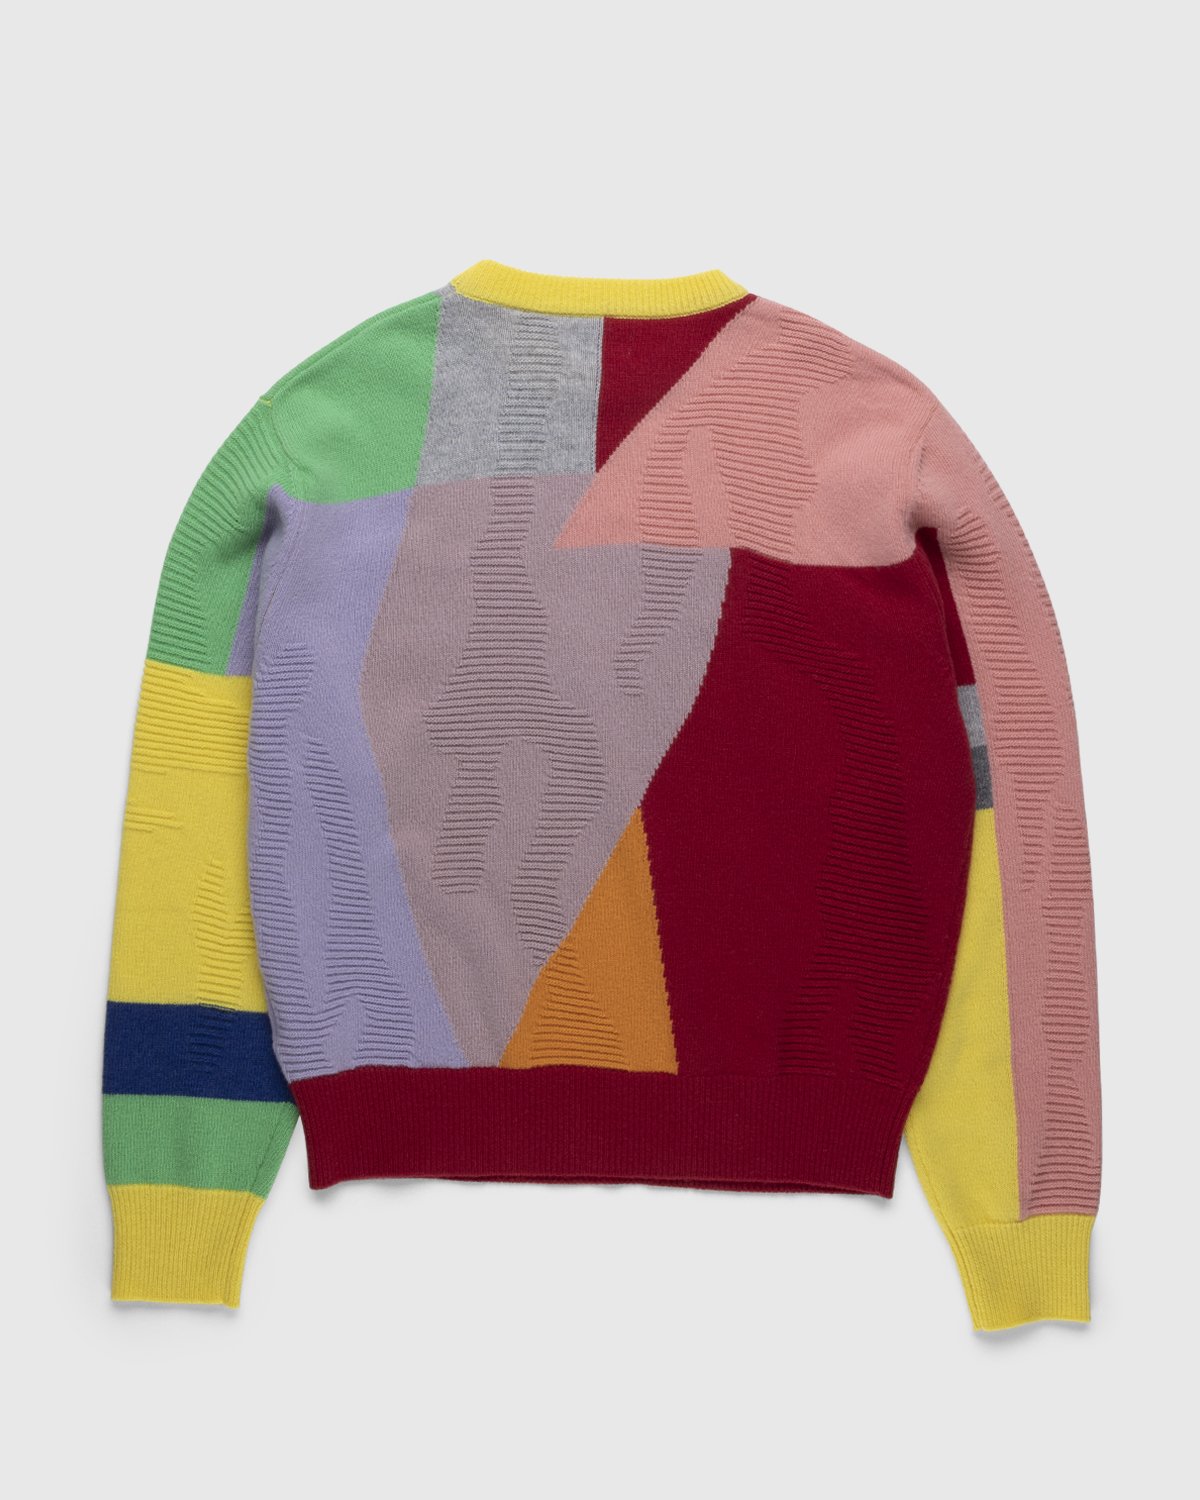 Honey Fucking Dijon x Eli Avaf - Textured Crewneck Knitted Sweater - Clothing - Multi - Image 2